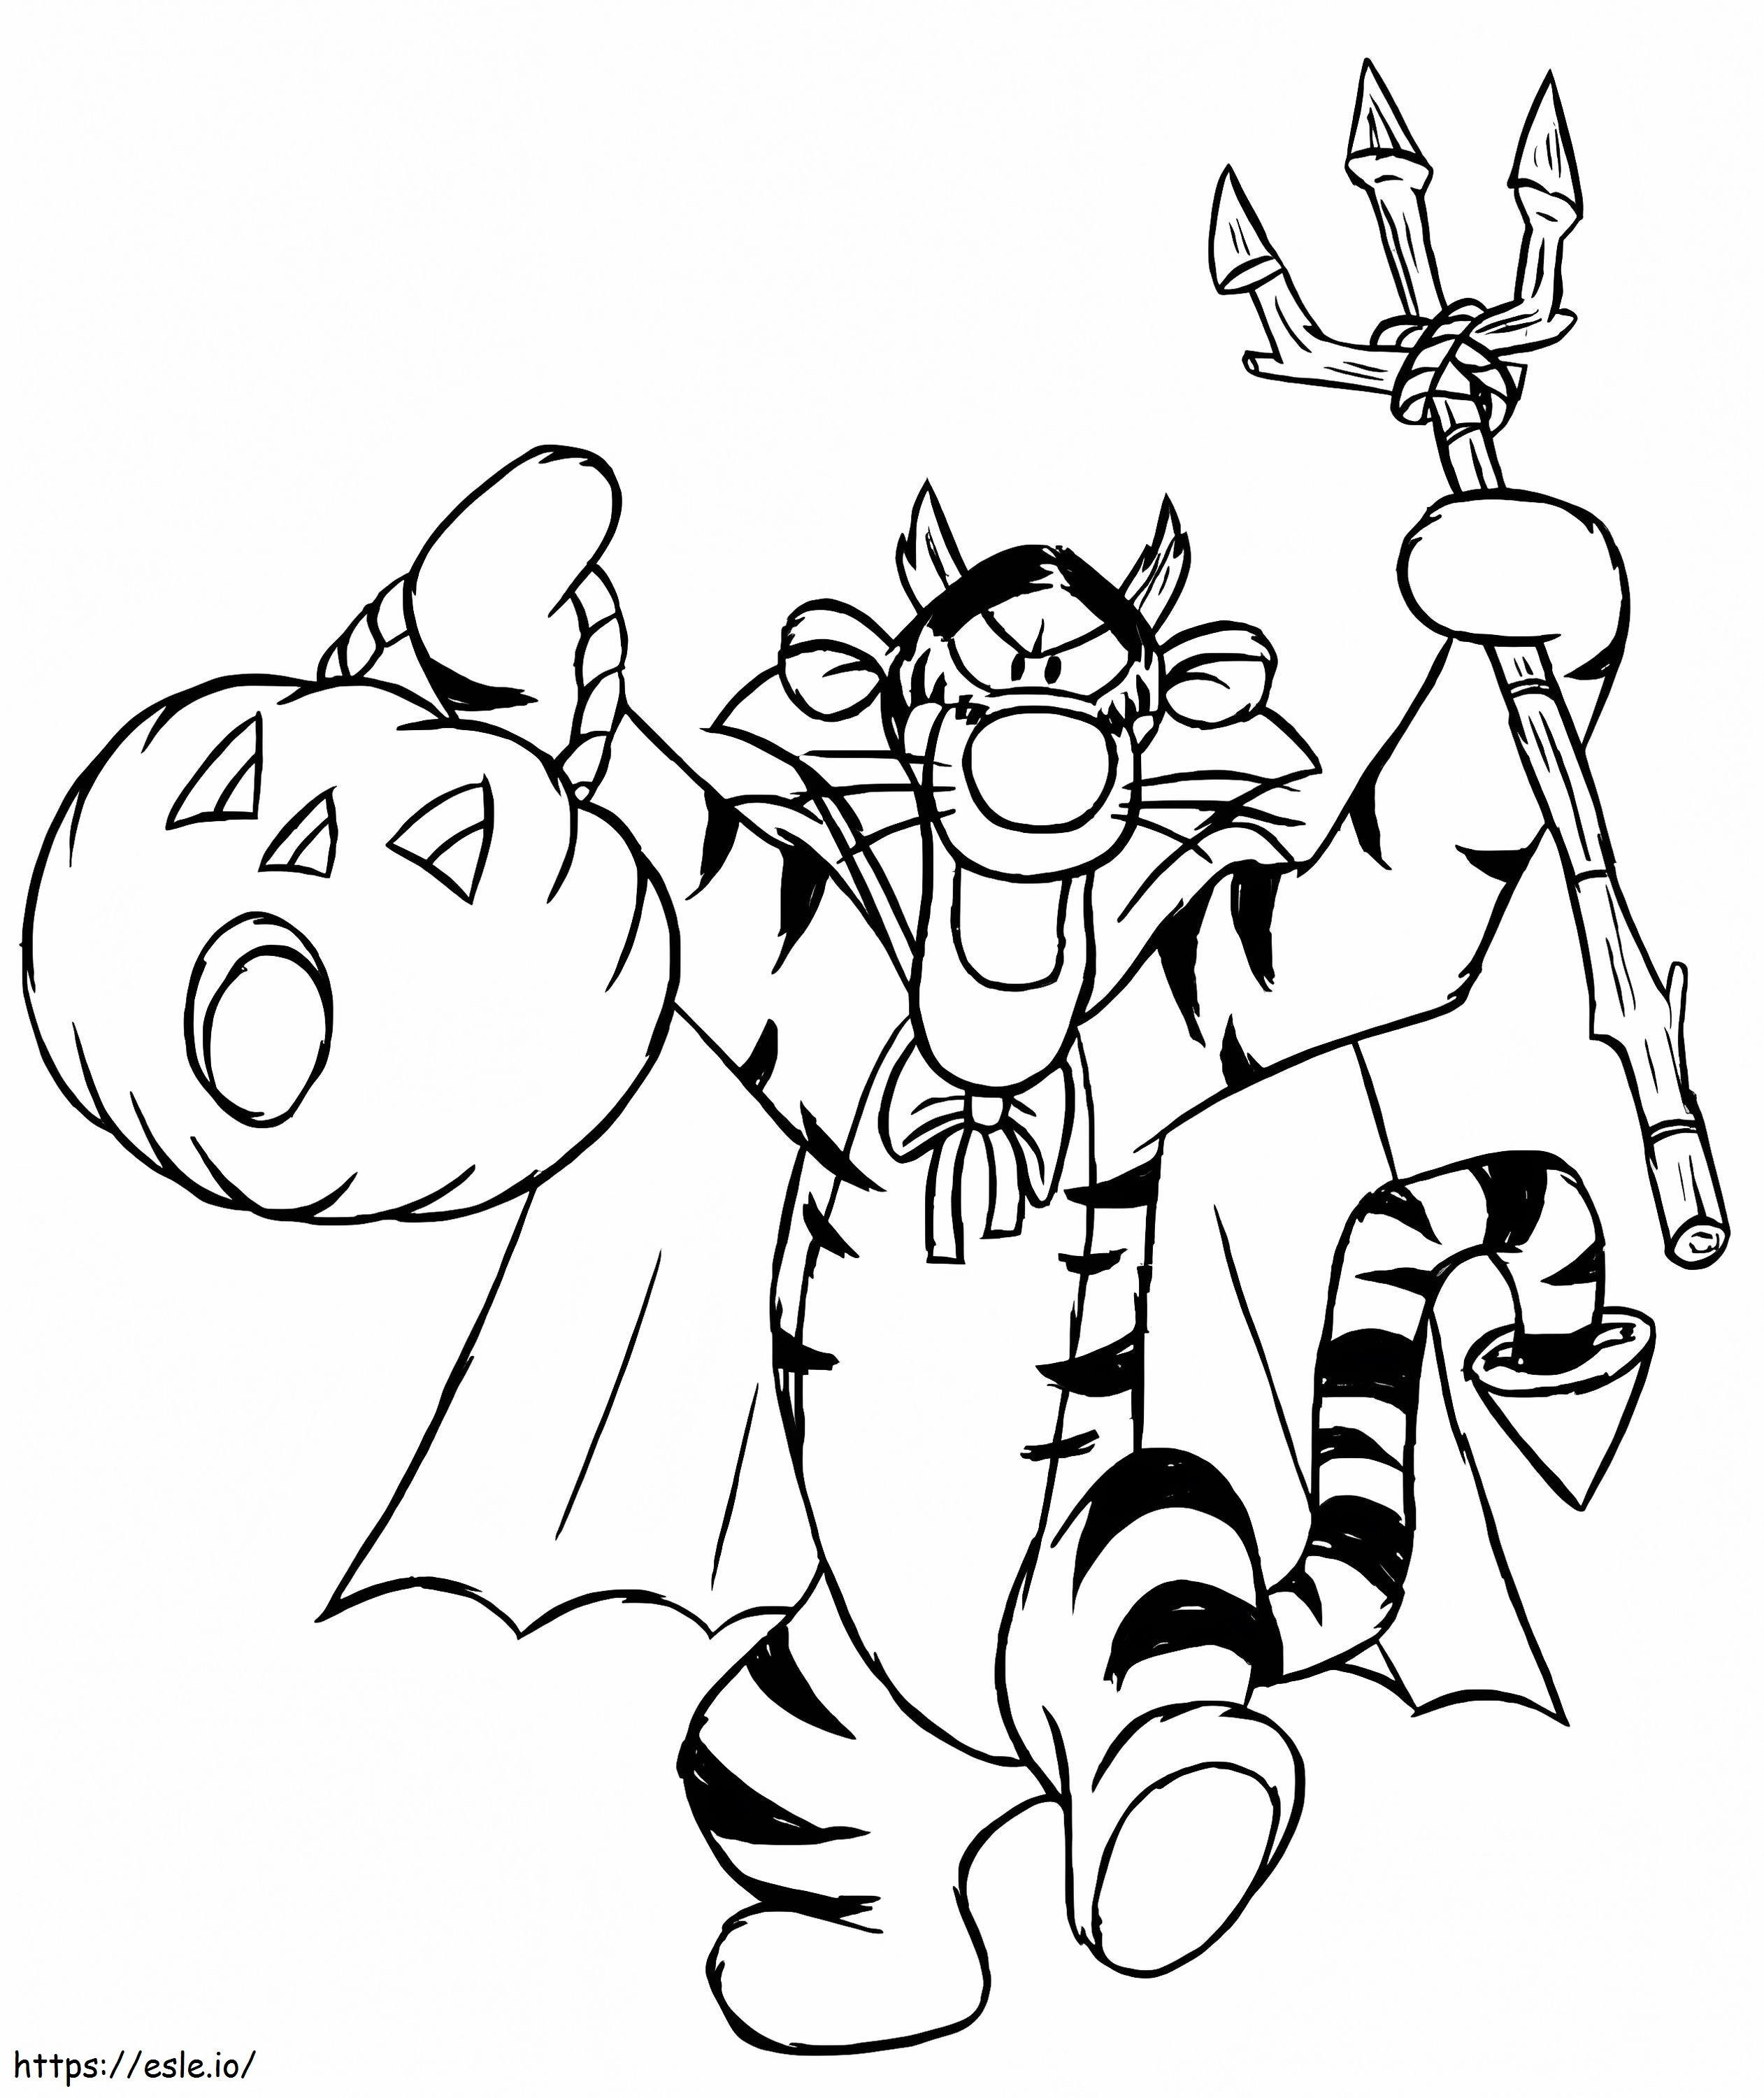 Halloweenowy Tygrys 1 kolorowanka